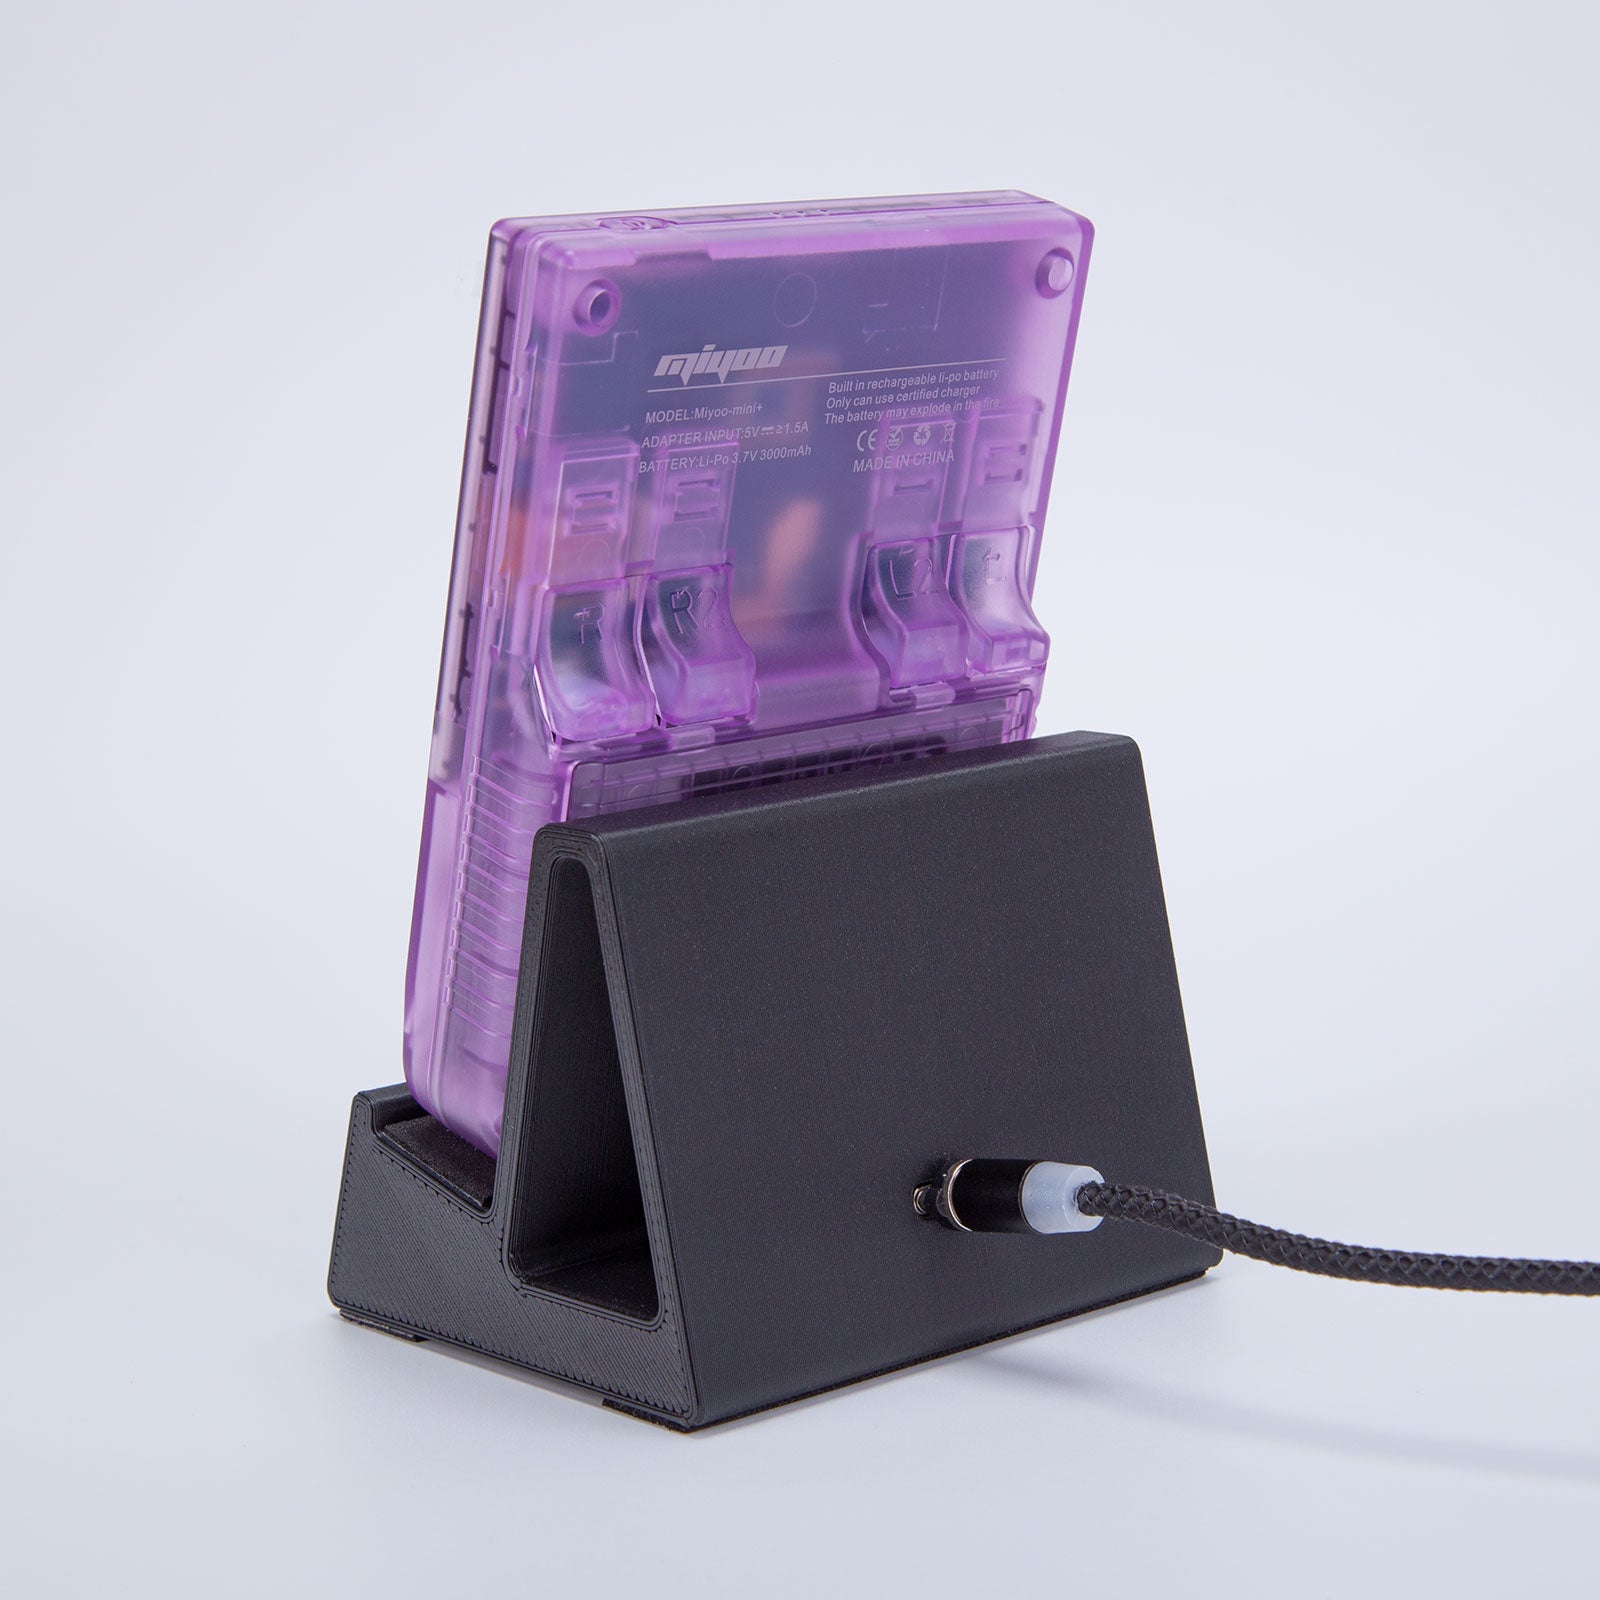 3D Printed Magnetic Charging Dock for Miyoo Mini Plus - Mechdiy